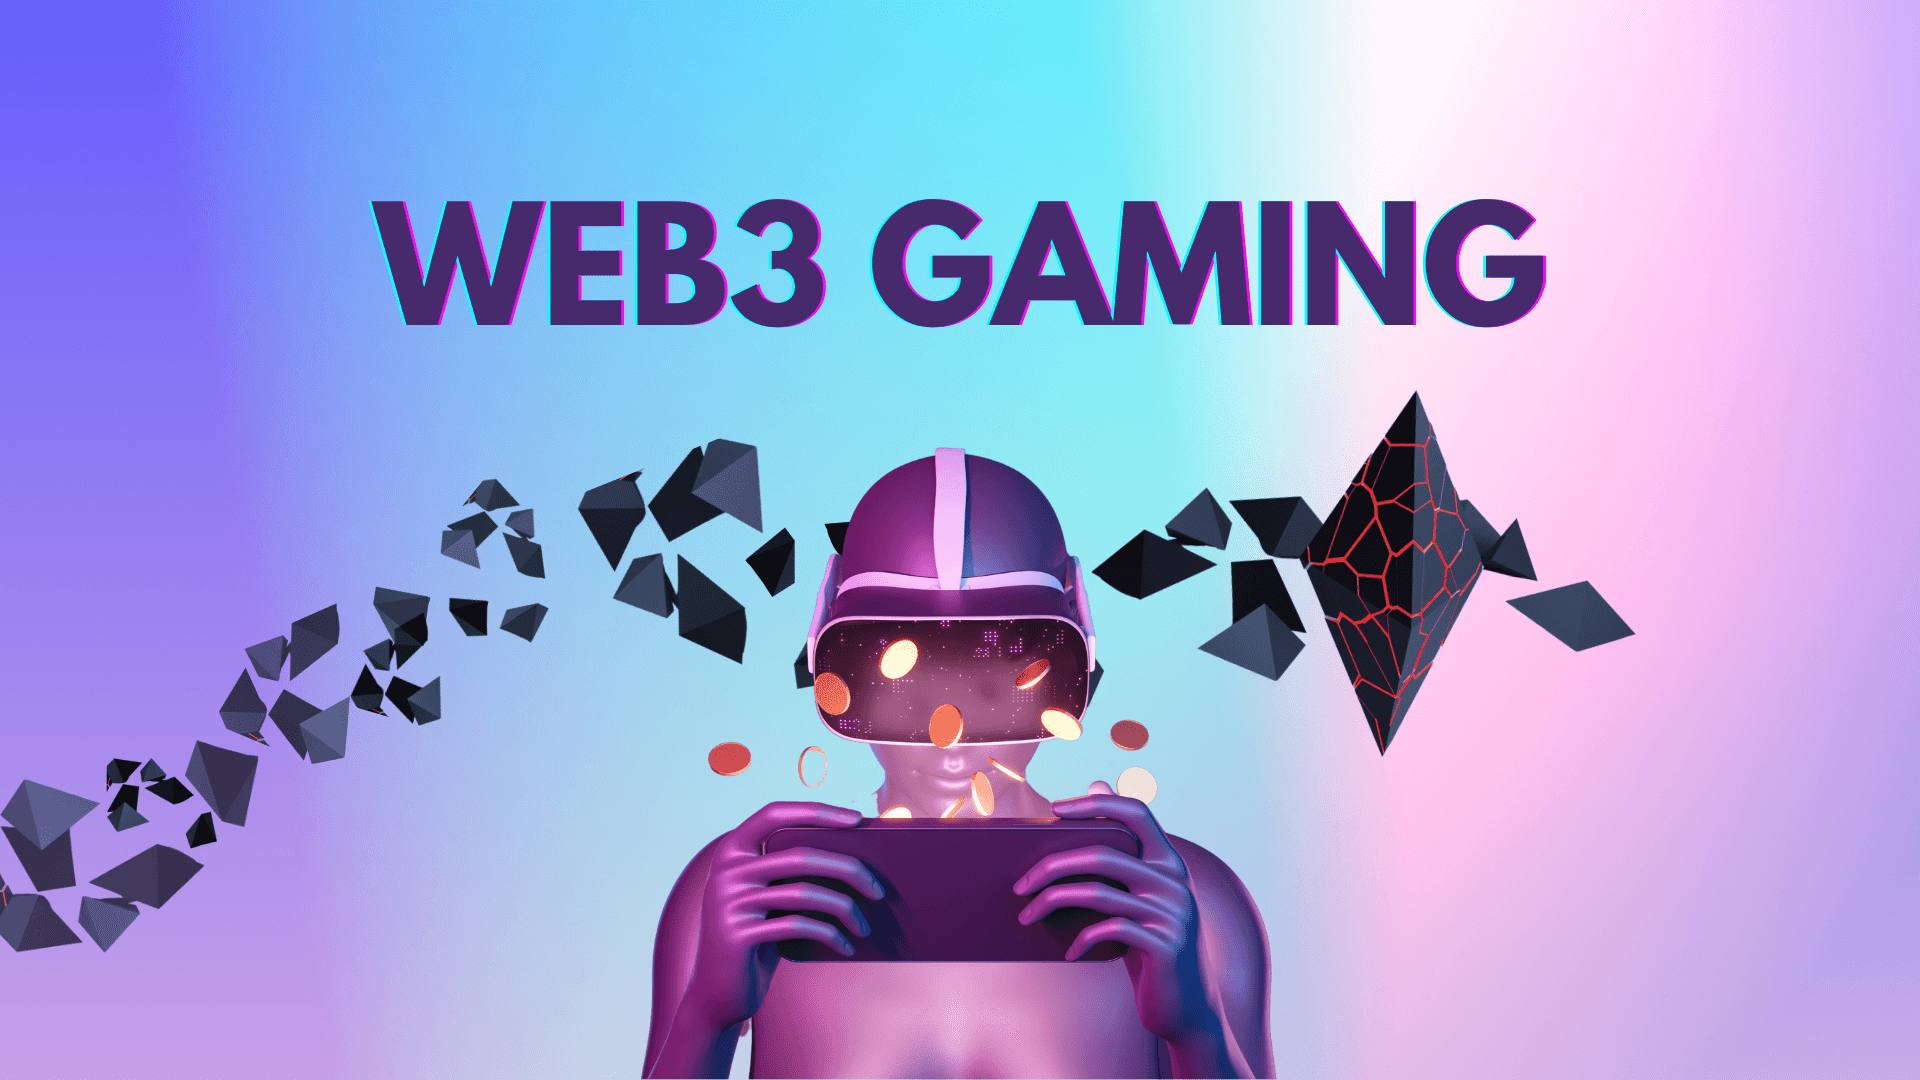 वेब3 गेमिंग समाचार: KMON: जेनेसिस, बॉस फाइटर्स, वल्कन फोर्ज्ड, सुपरवॉक, और रिबेल बॉट्स अपडेट्स